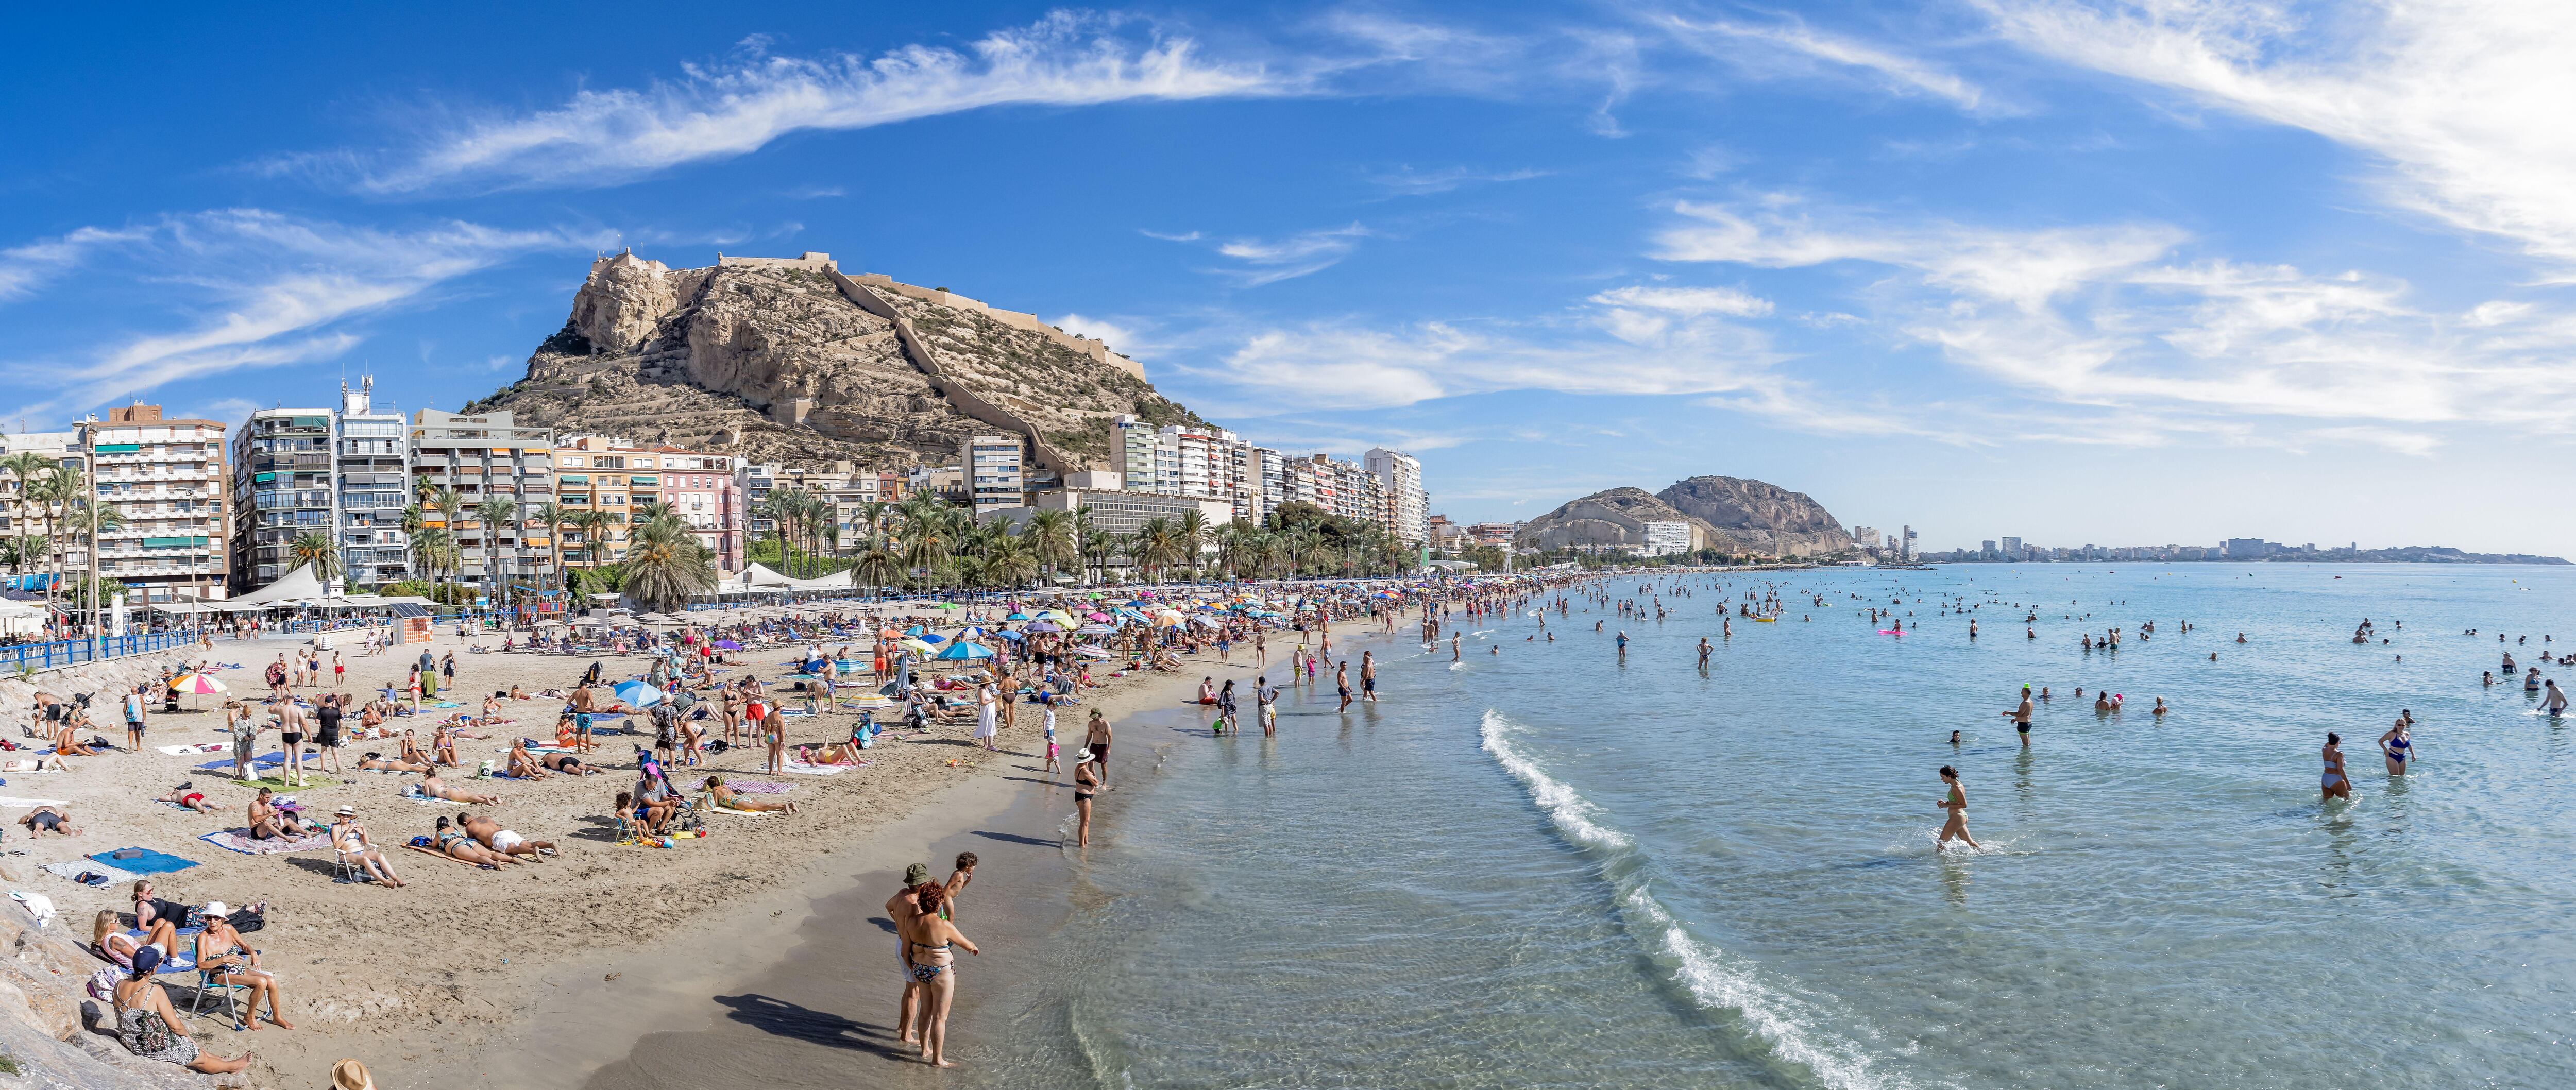 Vista panorámica de la playa de Alicante y el castillo de Santa Bárbara.